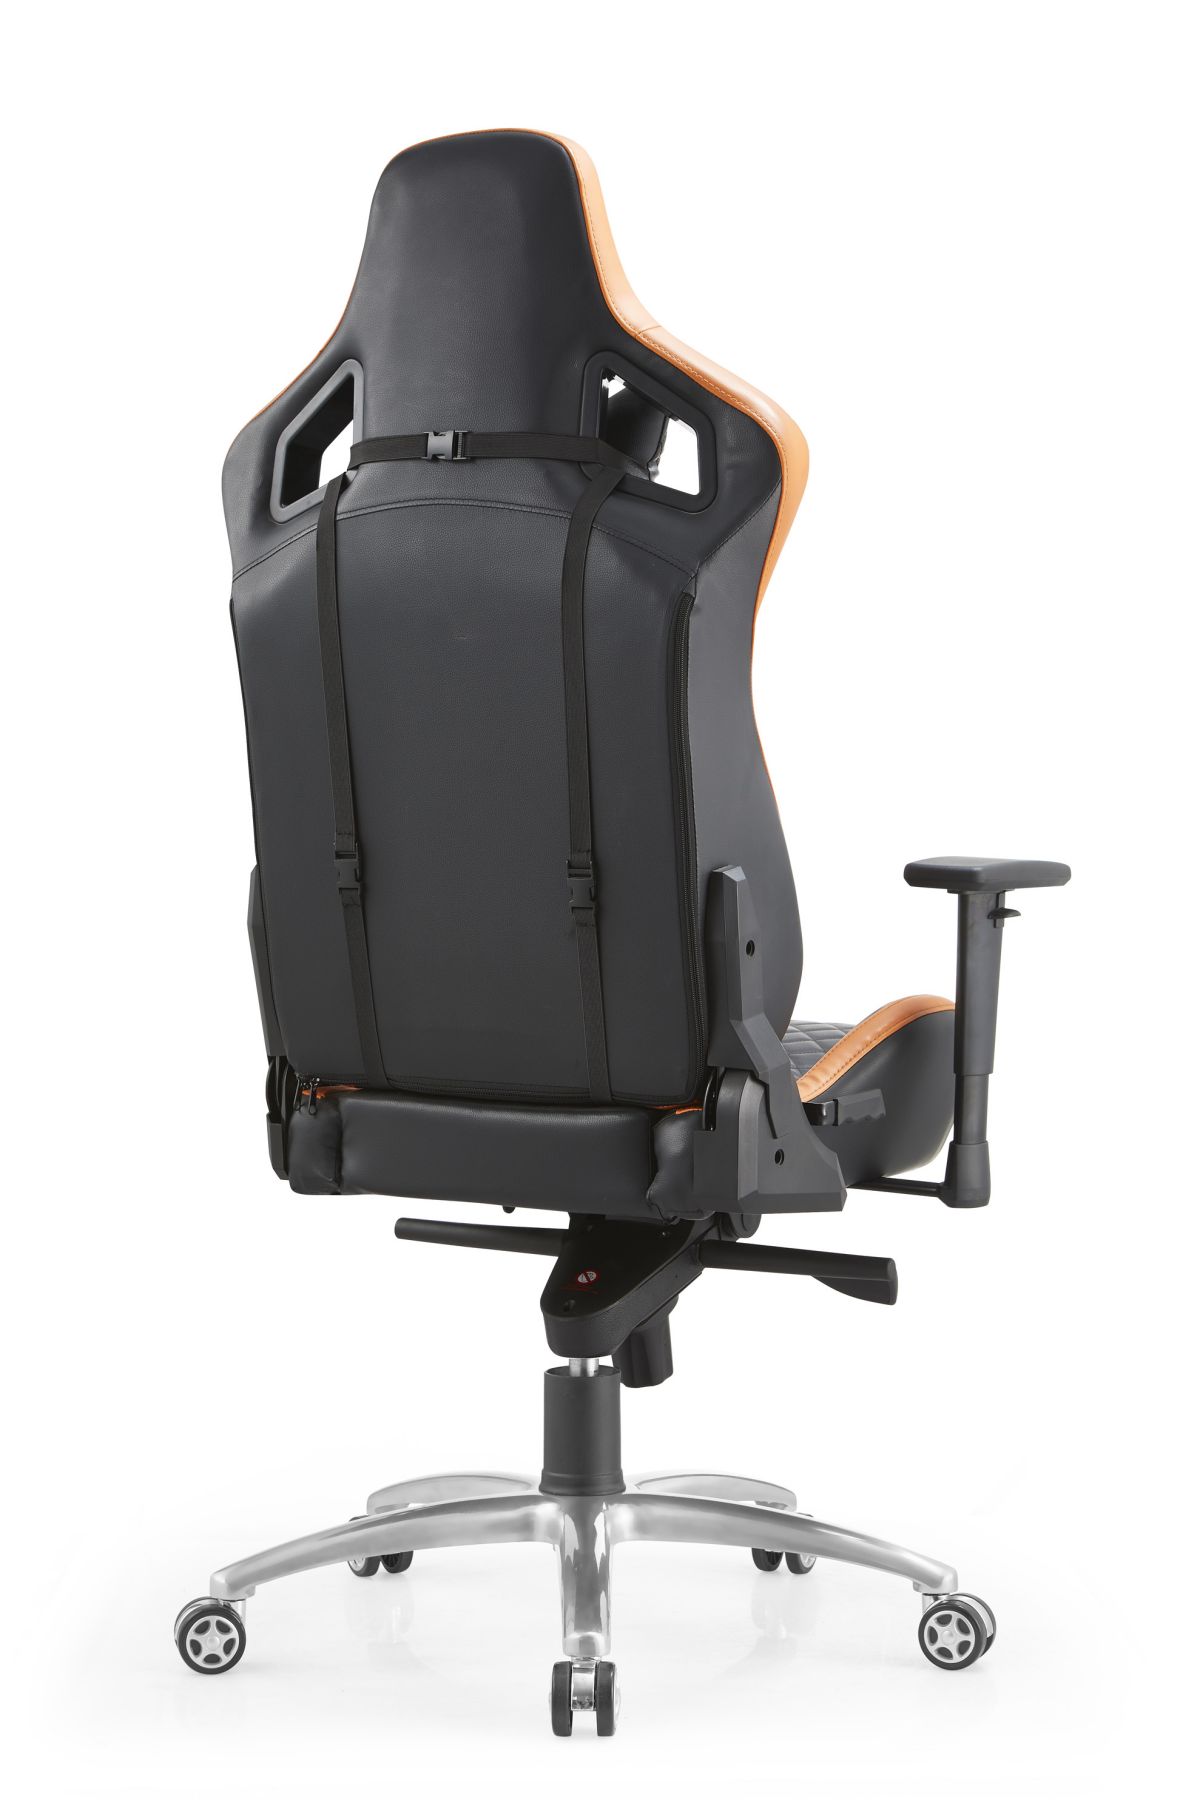 Ergonomisks spēļu krēsls (2)